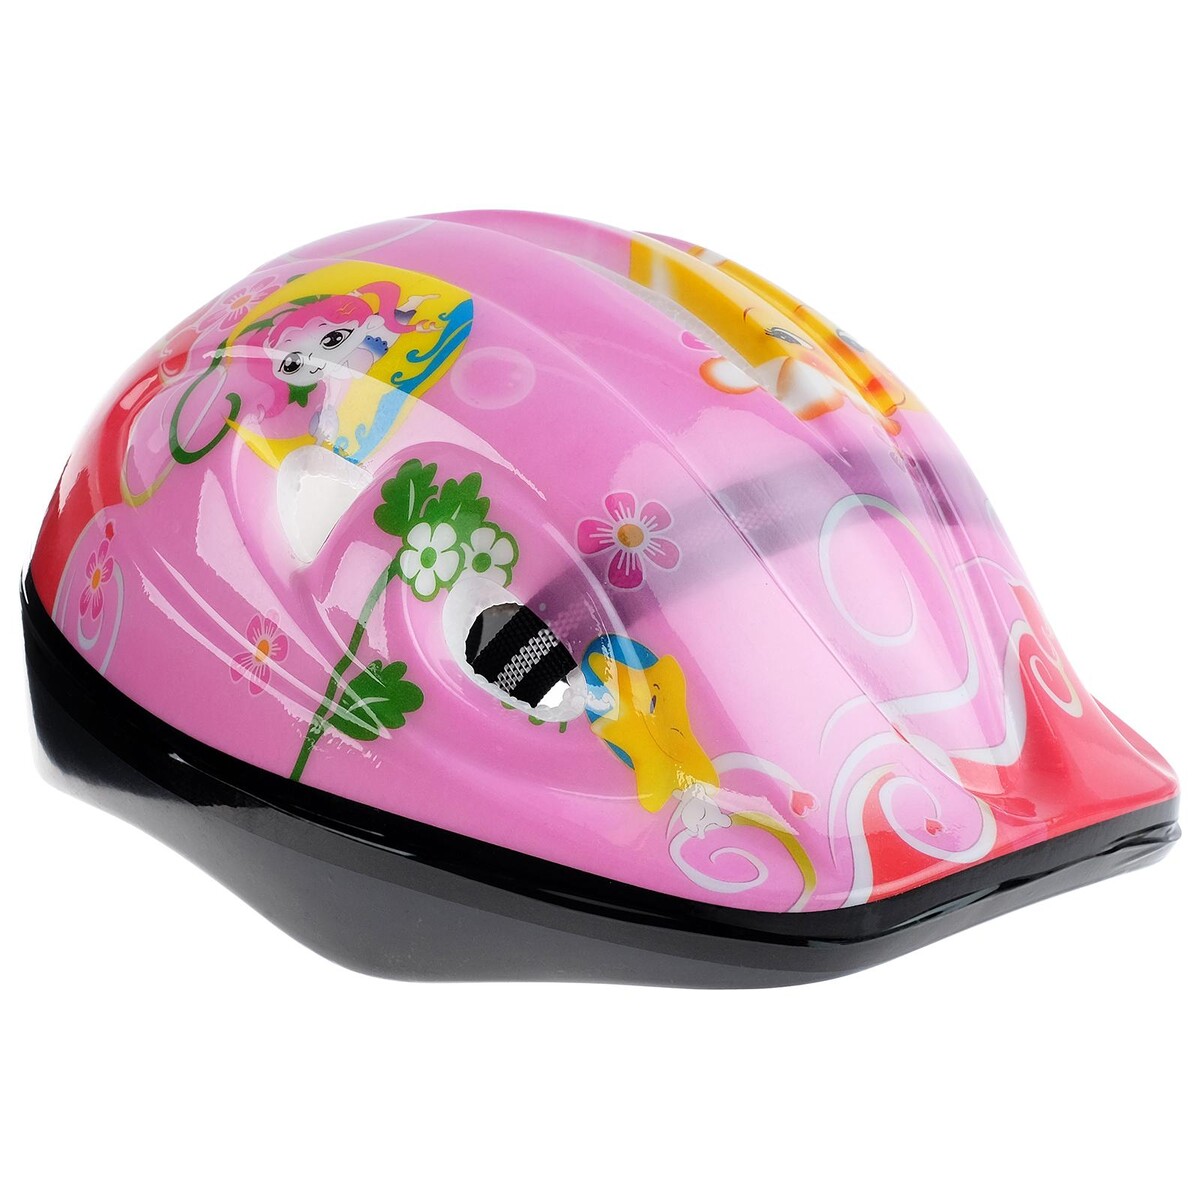 Шлем защитный детский onlytop ot-501, обхват 52-54 см, цвет розовый шлем защитный детский onlytop ot h6 обхват 55 58 см розовый